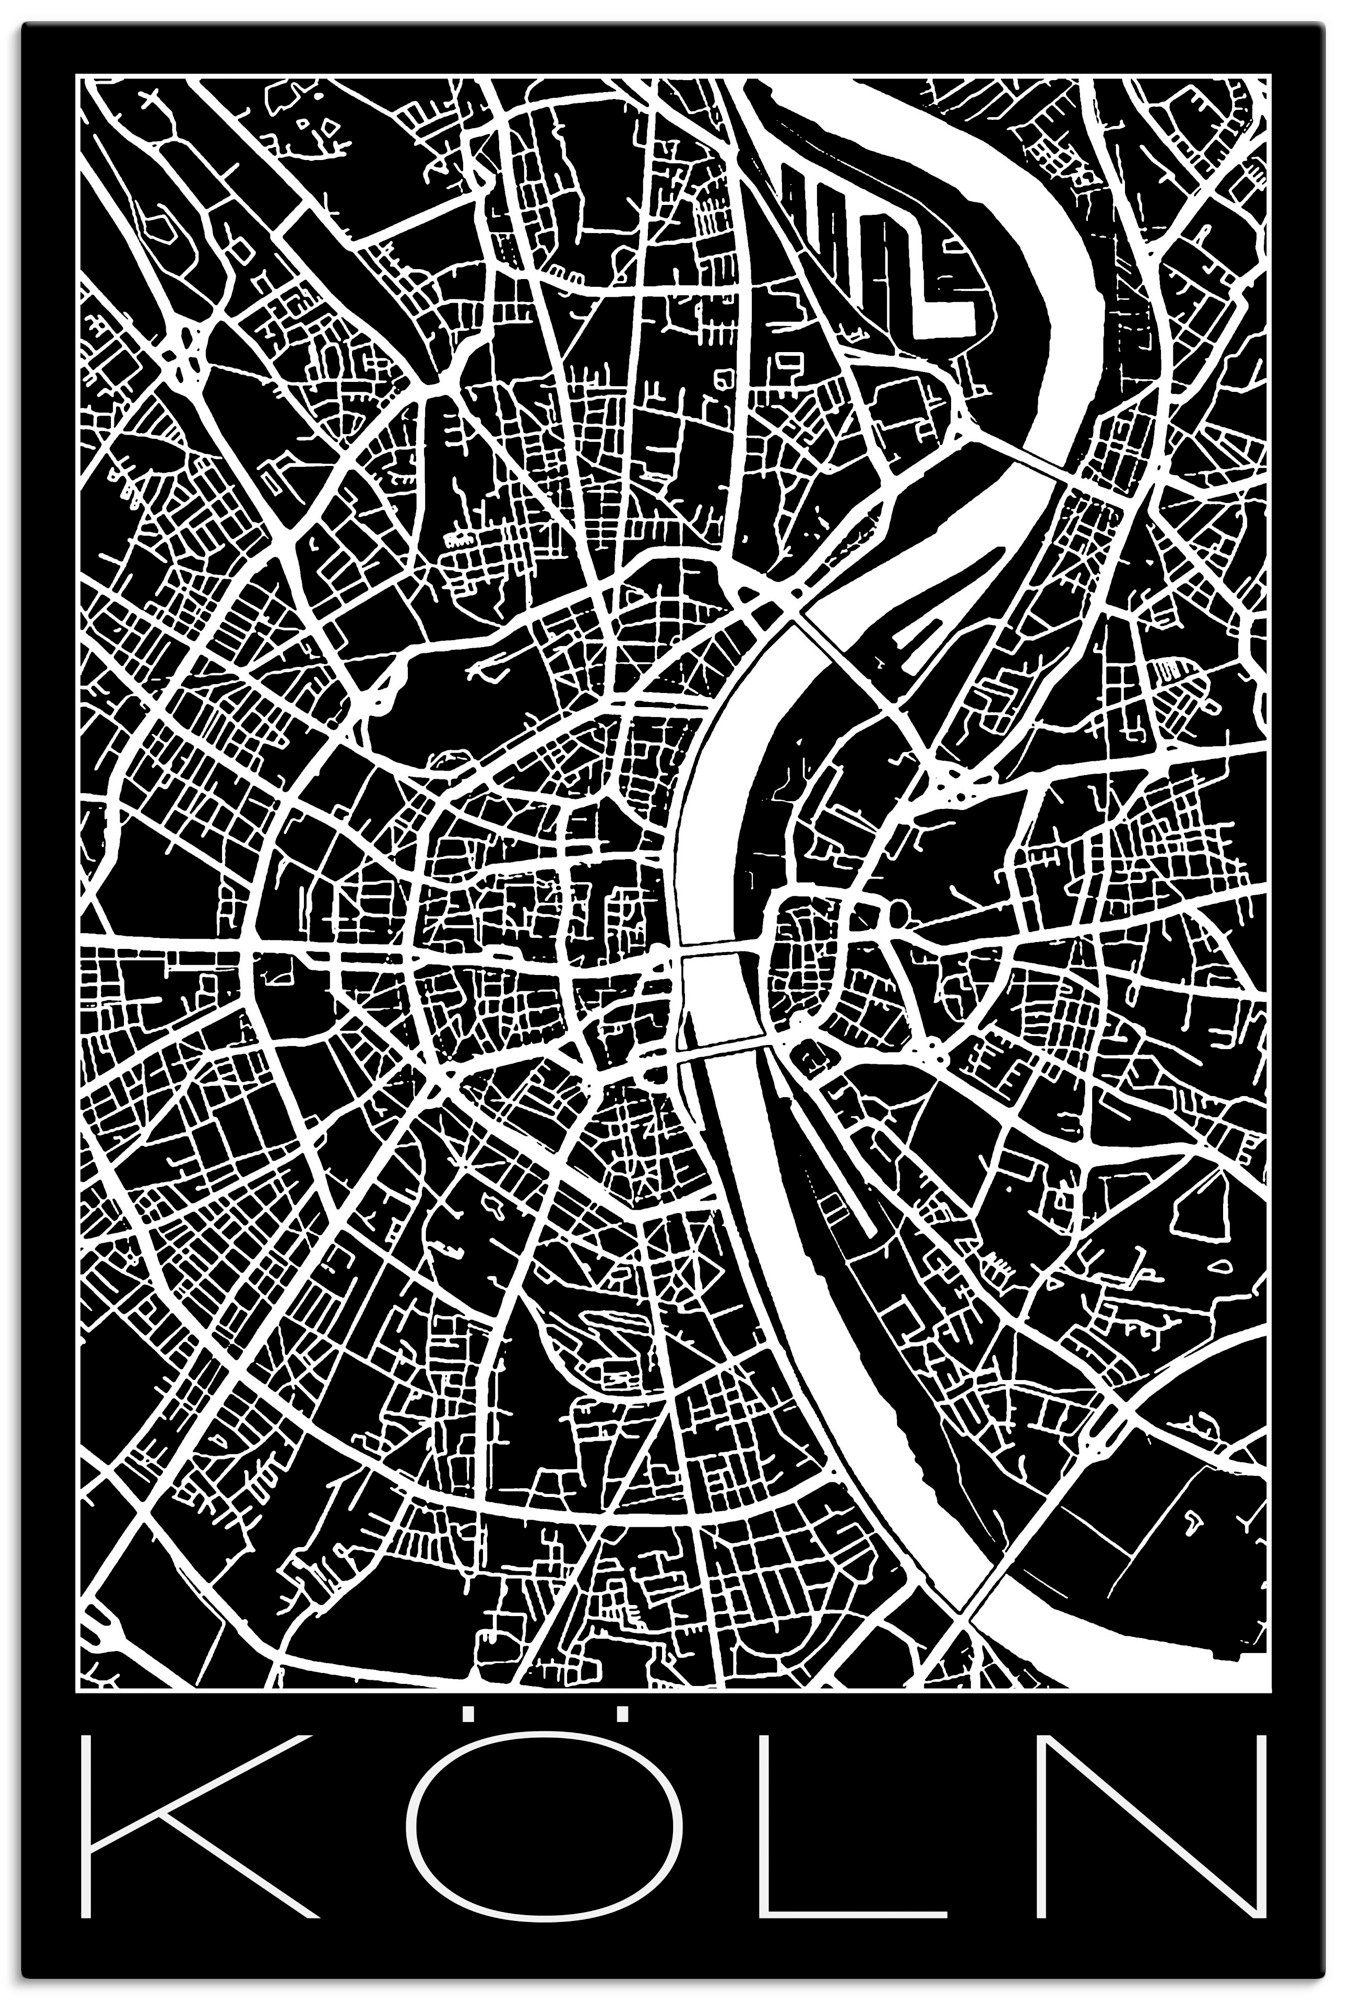 Artland Artprint Retro kaart Keulen Duitsland zwart in vele afmetingen & productsoorten - artprint van aluminium / artprint voor buiten, artprint op linnen, poster, muursticker / w